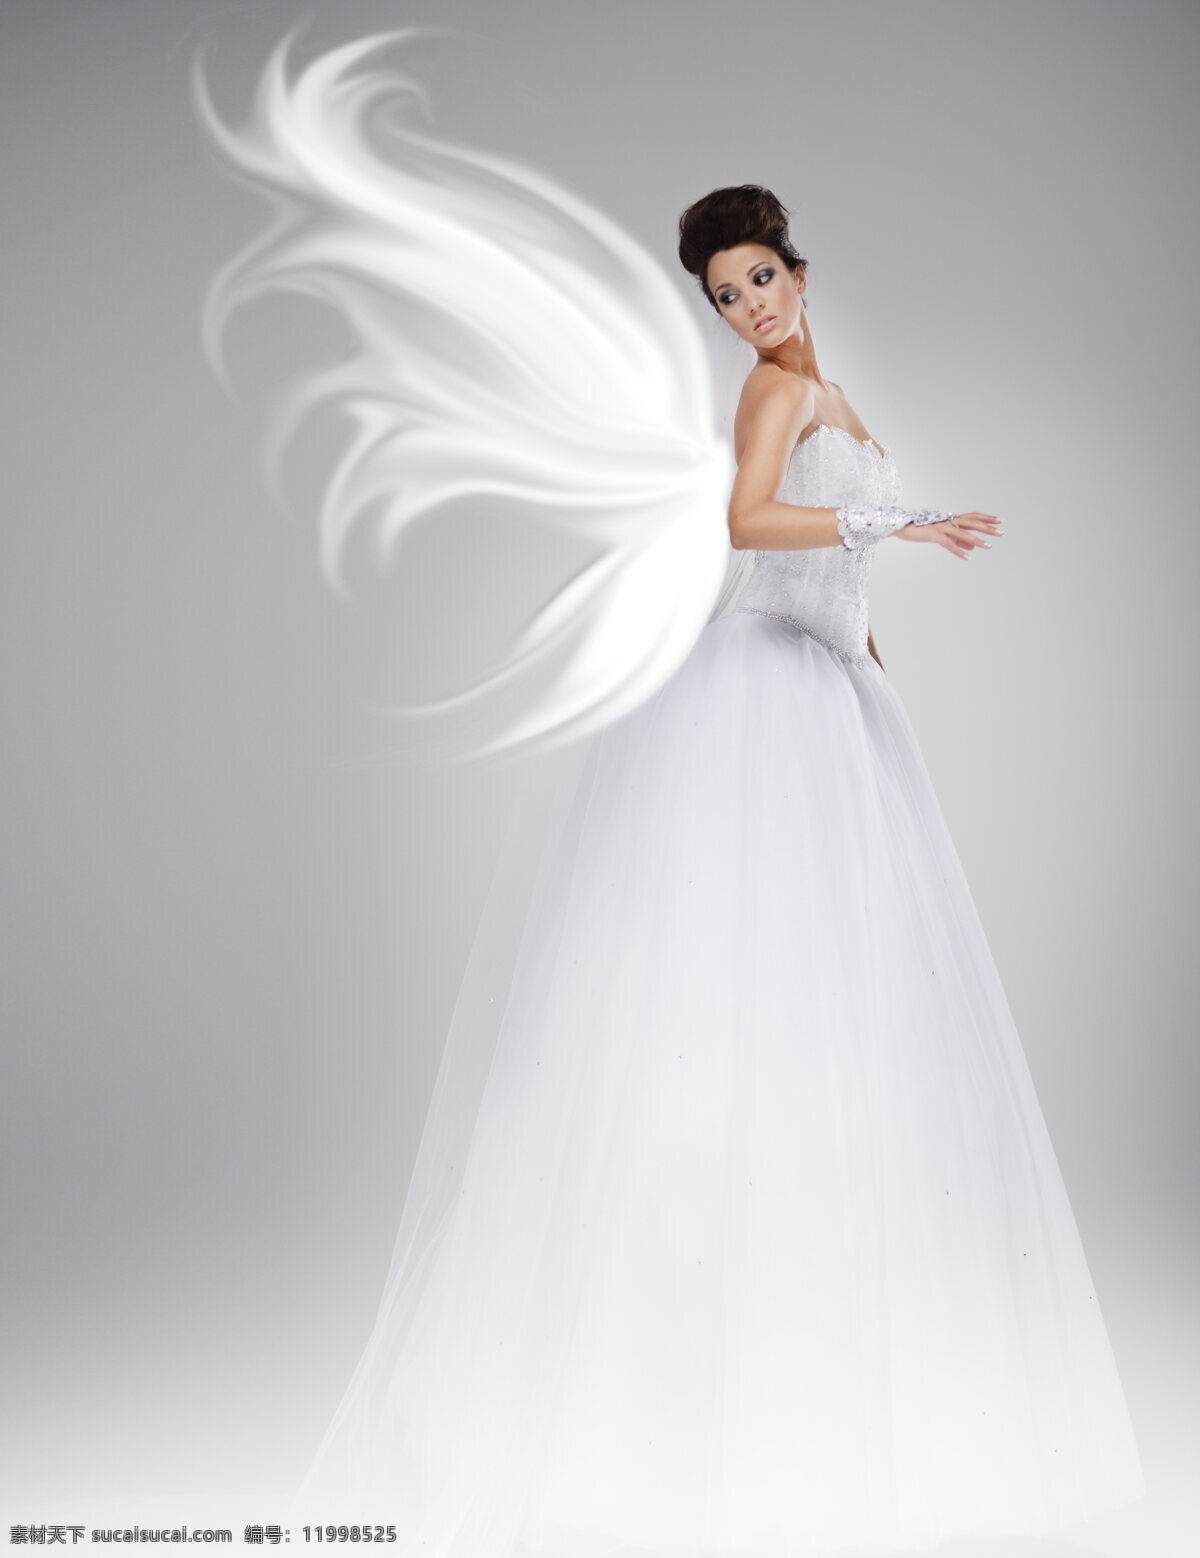 创意 婚纱照 天使 新娘 高清 婚纱摄影 白色 婚纱 礼服